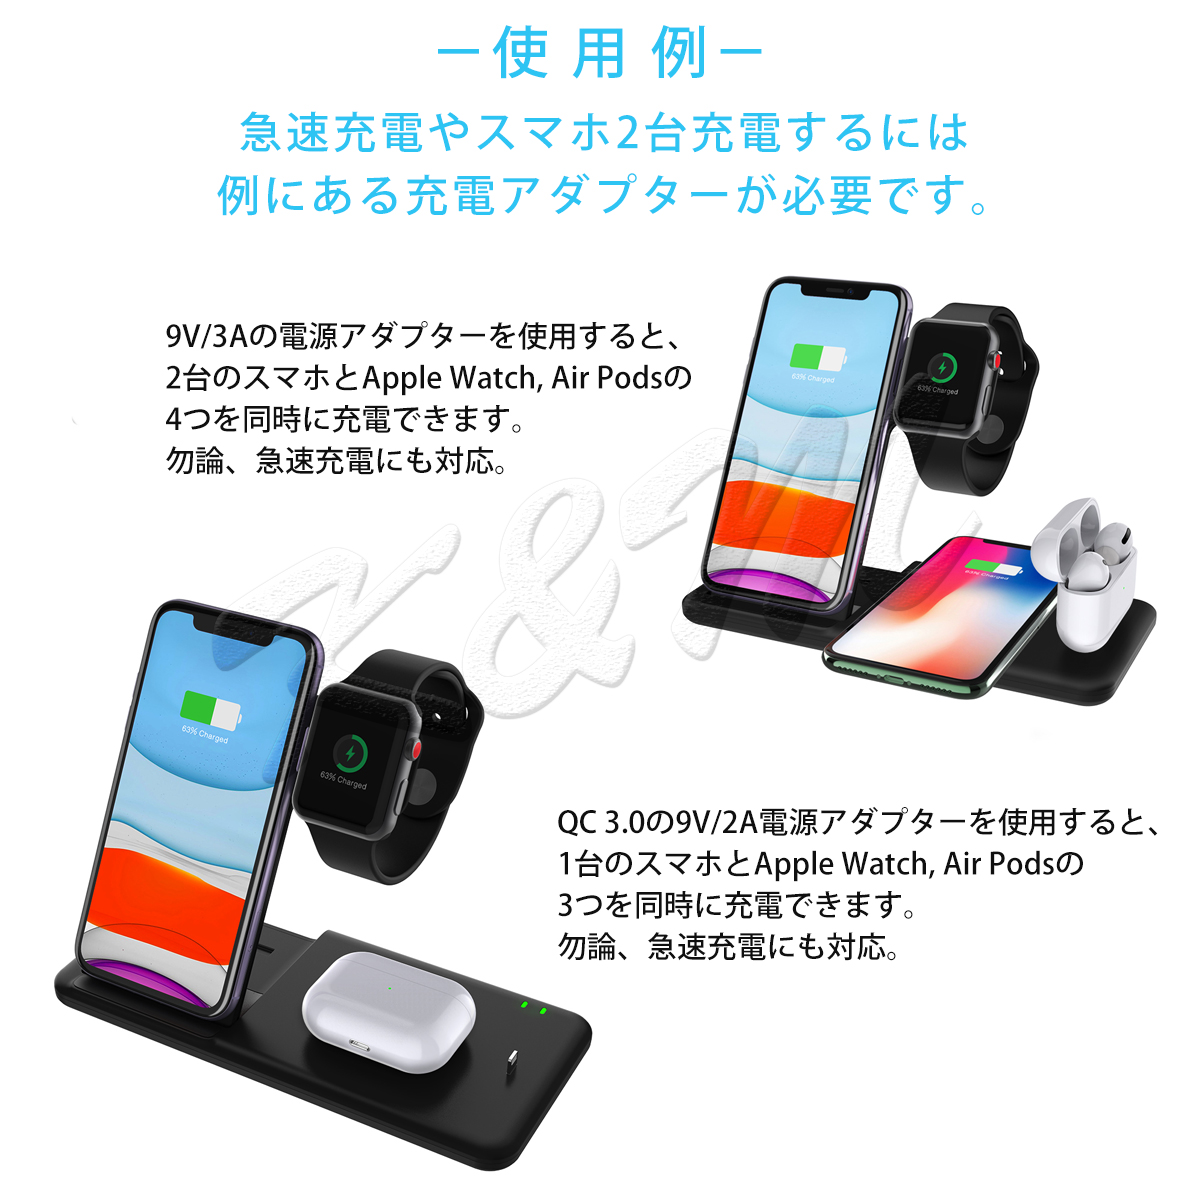 iPhone Apple Watch AirPods 4in1 Qiワイヤレス充電スタンド 4台同時充電 スマホ2台可能 折り畳み式 Androidスマホ アップルウォッチ QC3.0 急速充電対応 同時充電 ワイヤレスチャージャー Galaxy Xperia 対応 黒 SDM便送料無料 1ヶ月保証